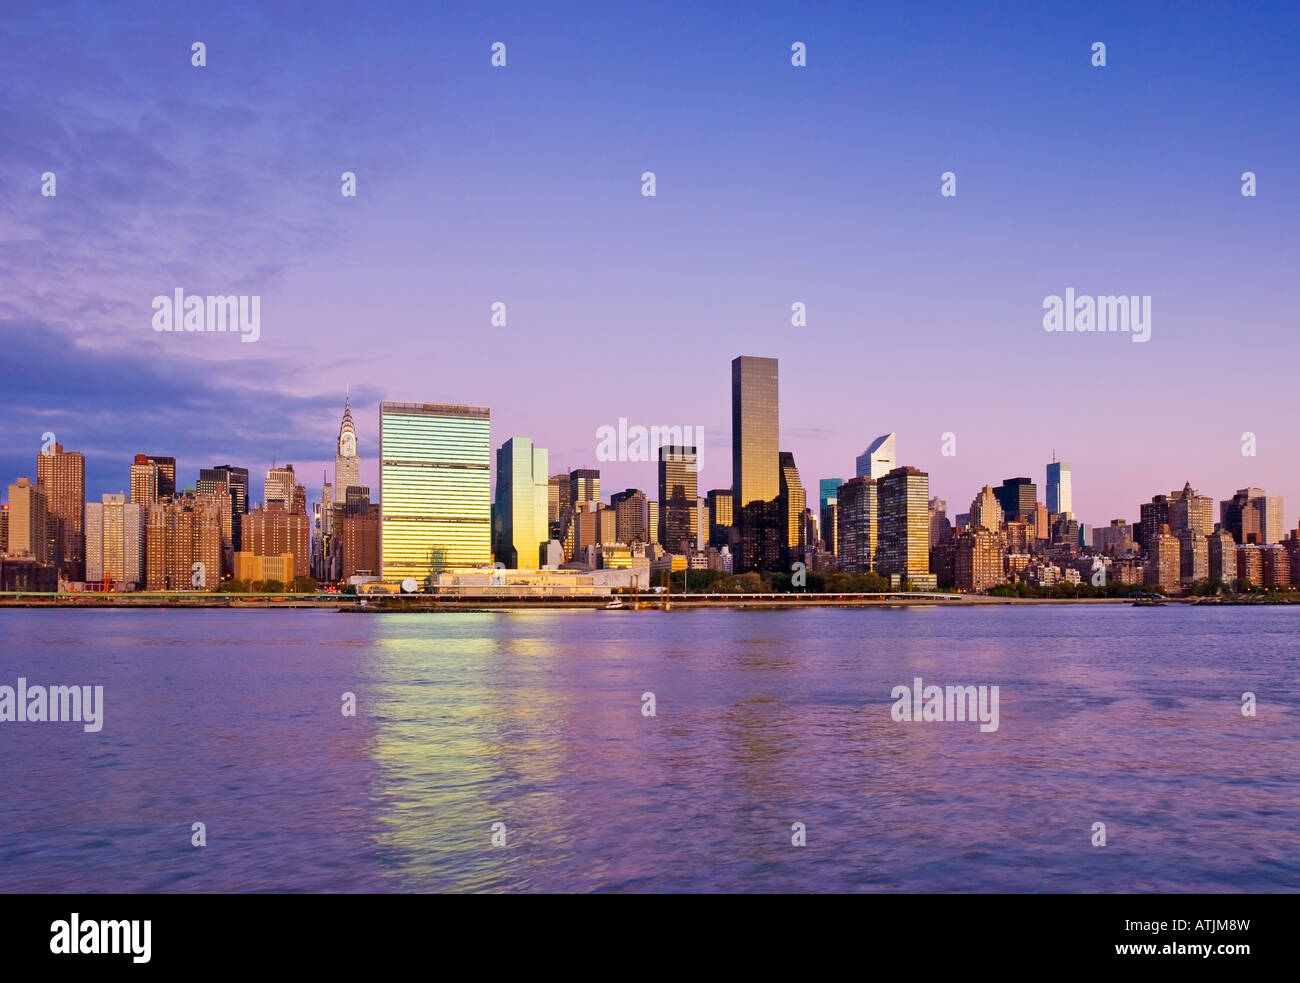 La ville de New York. Skyline de Manhattan vu de l'East River montrant le Chrysler Building et l'Organisation des Nations Unies. Banque D'Images